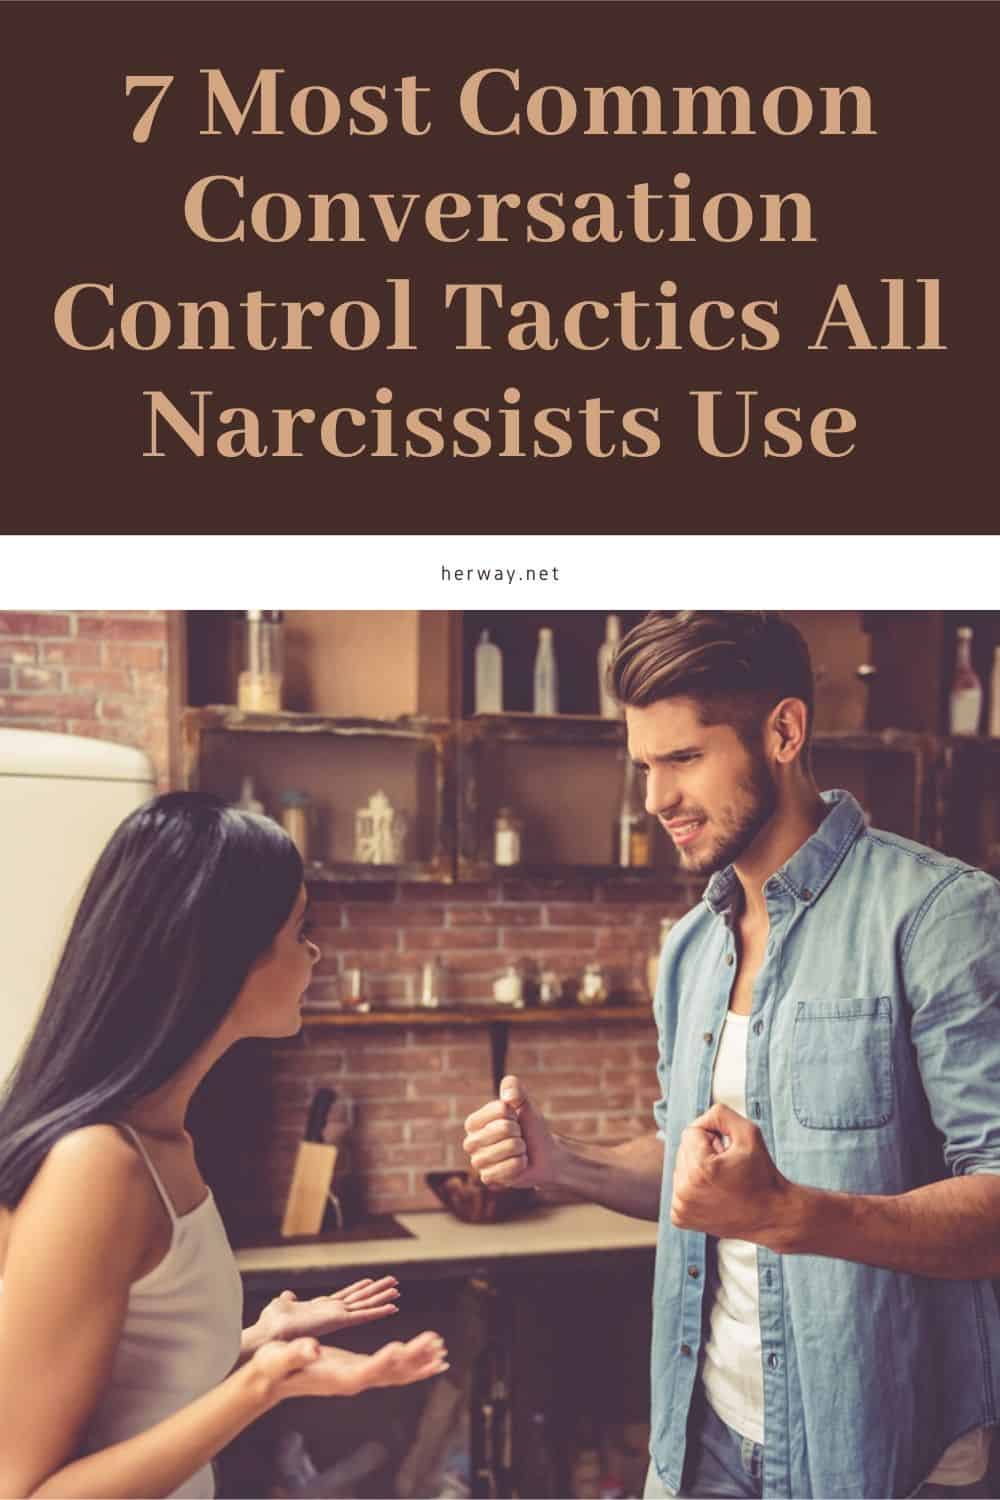 7 Most Common Conversation Control Tactics All Narcissists Use